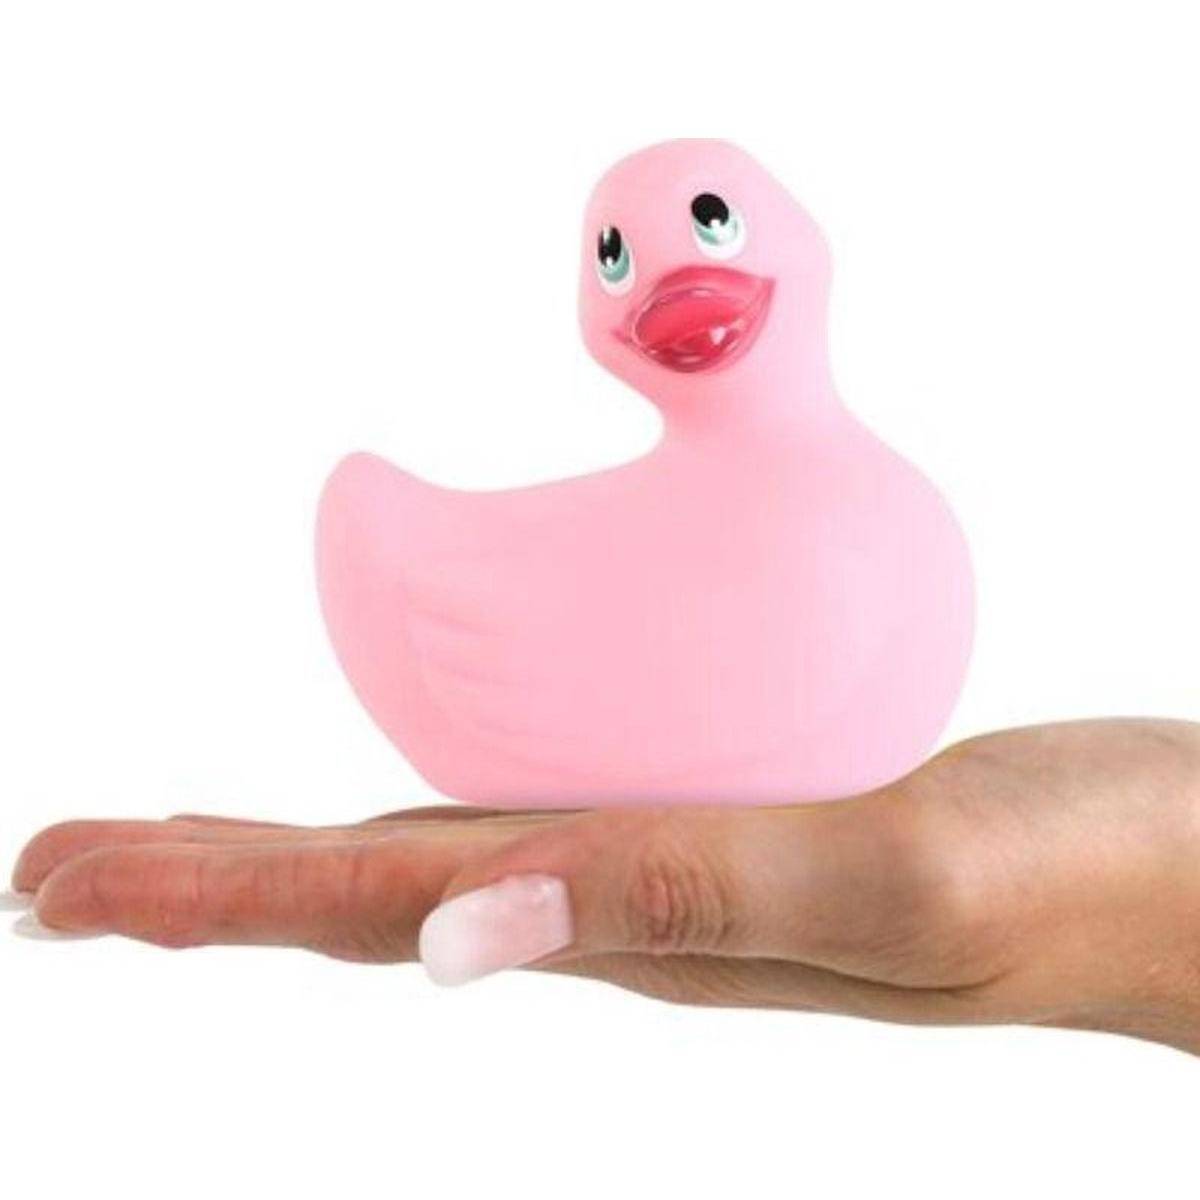 Вибратор-уточка Big Teaze Toys I Rub My Duckie 2.0, розовый E29001 (жен. вибратор) оптом